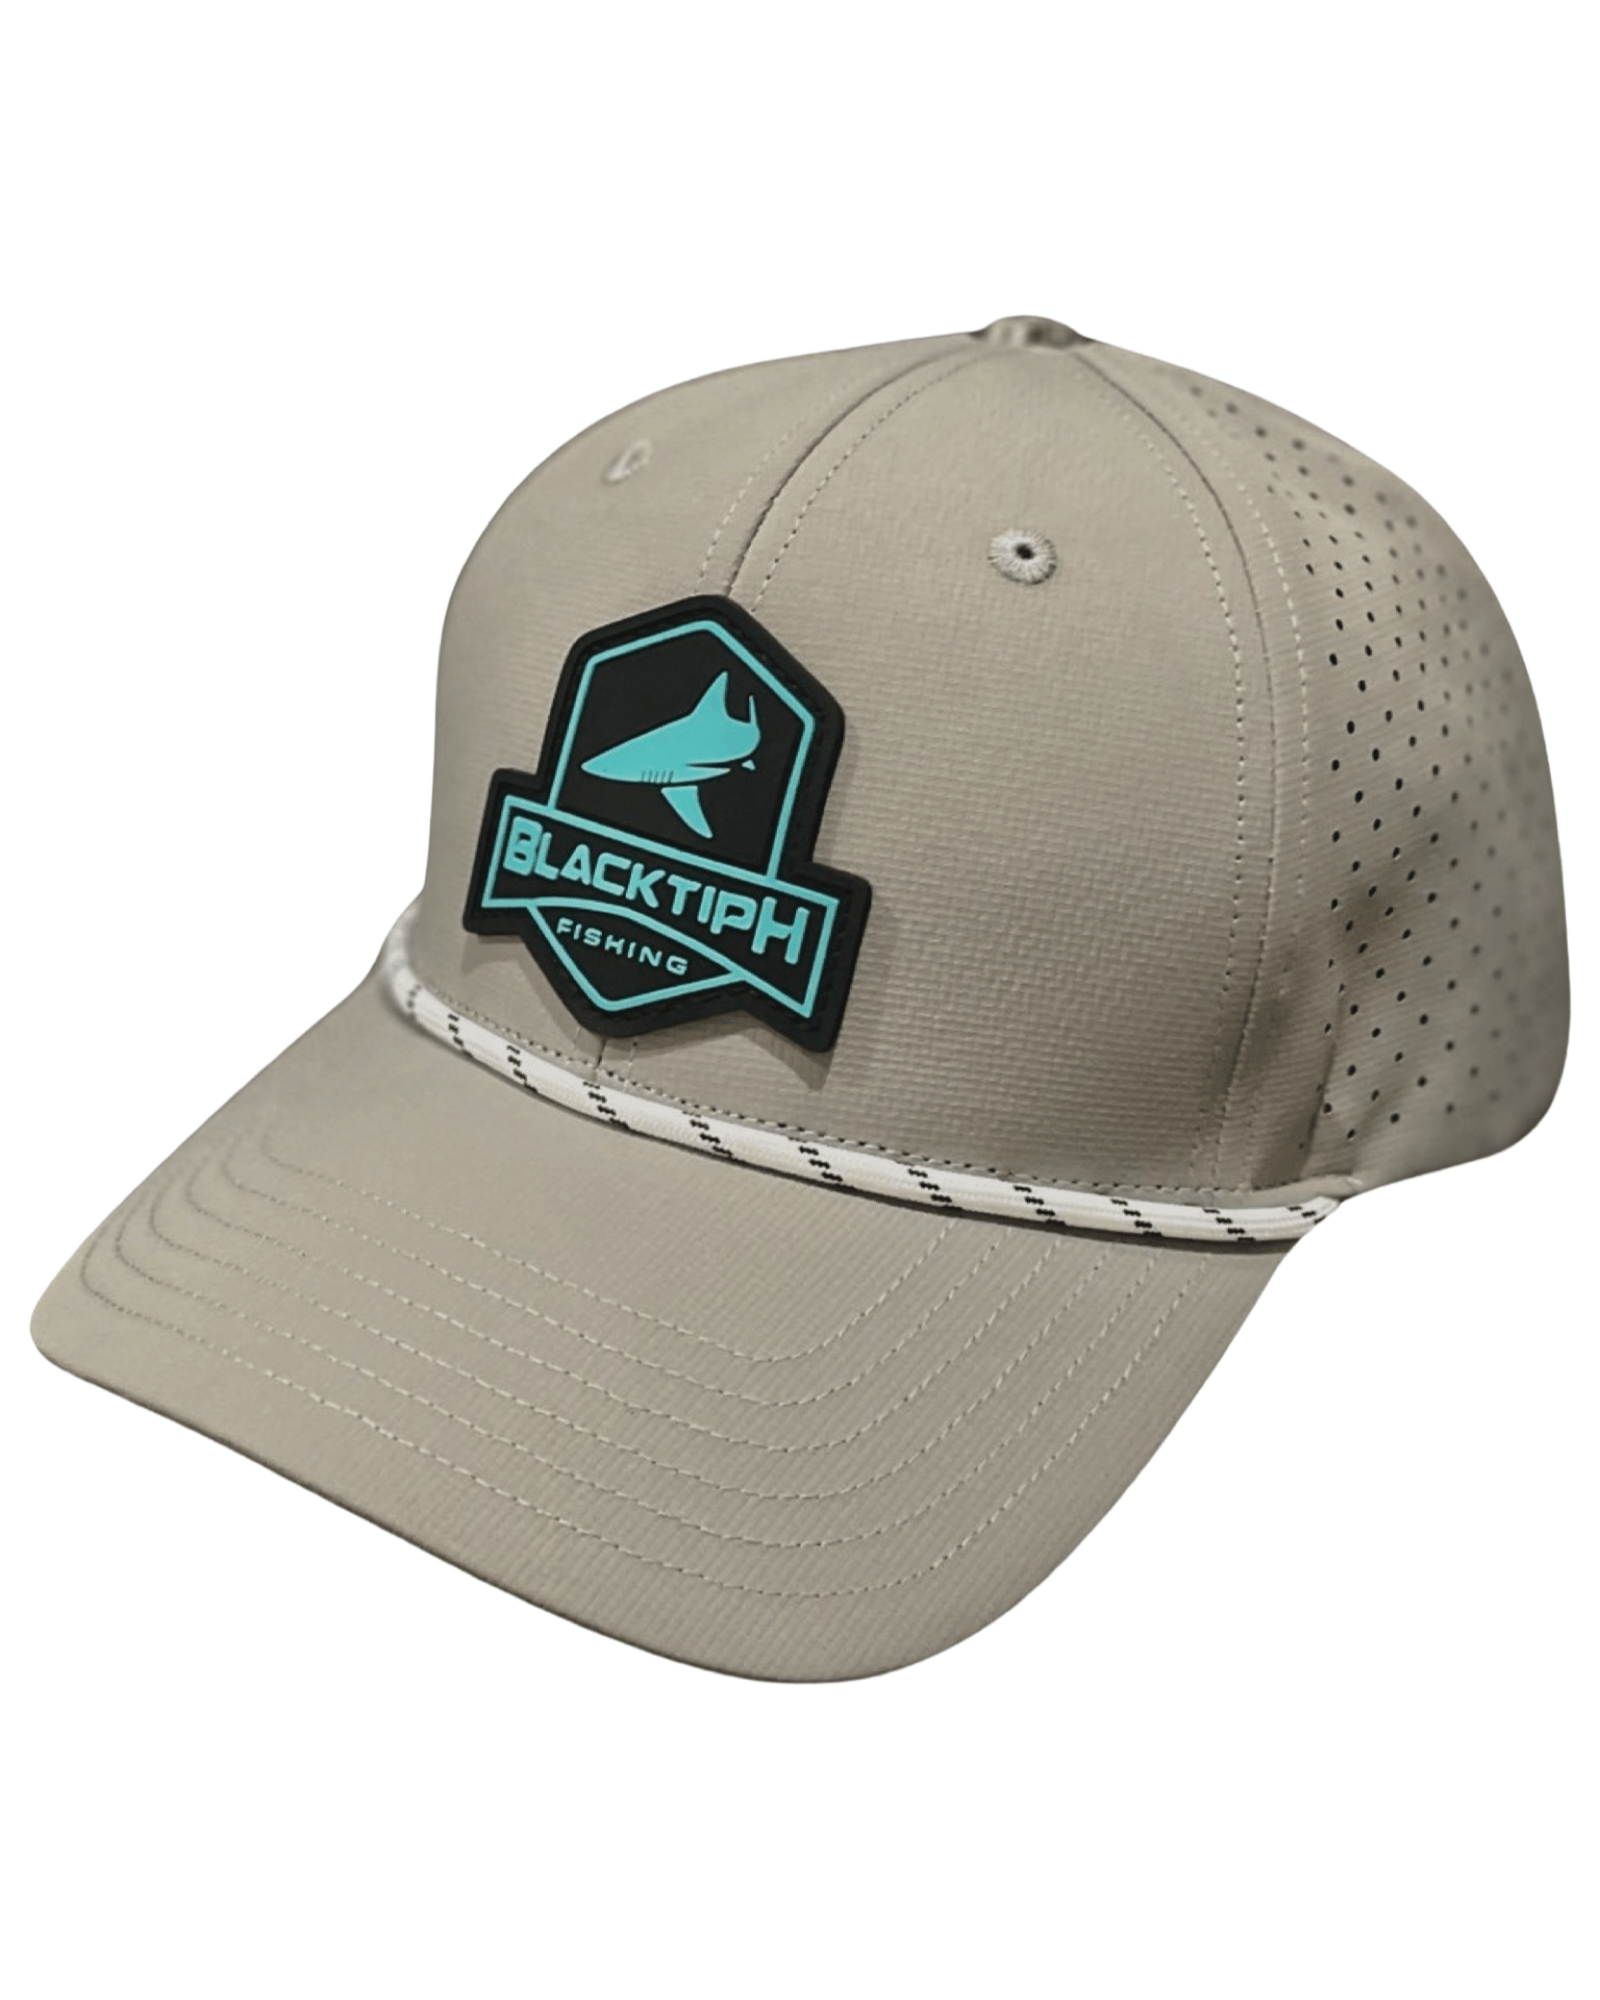 BlacktipH Bucket Fishing Hat - Russell's Western Wear, Inc.